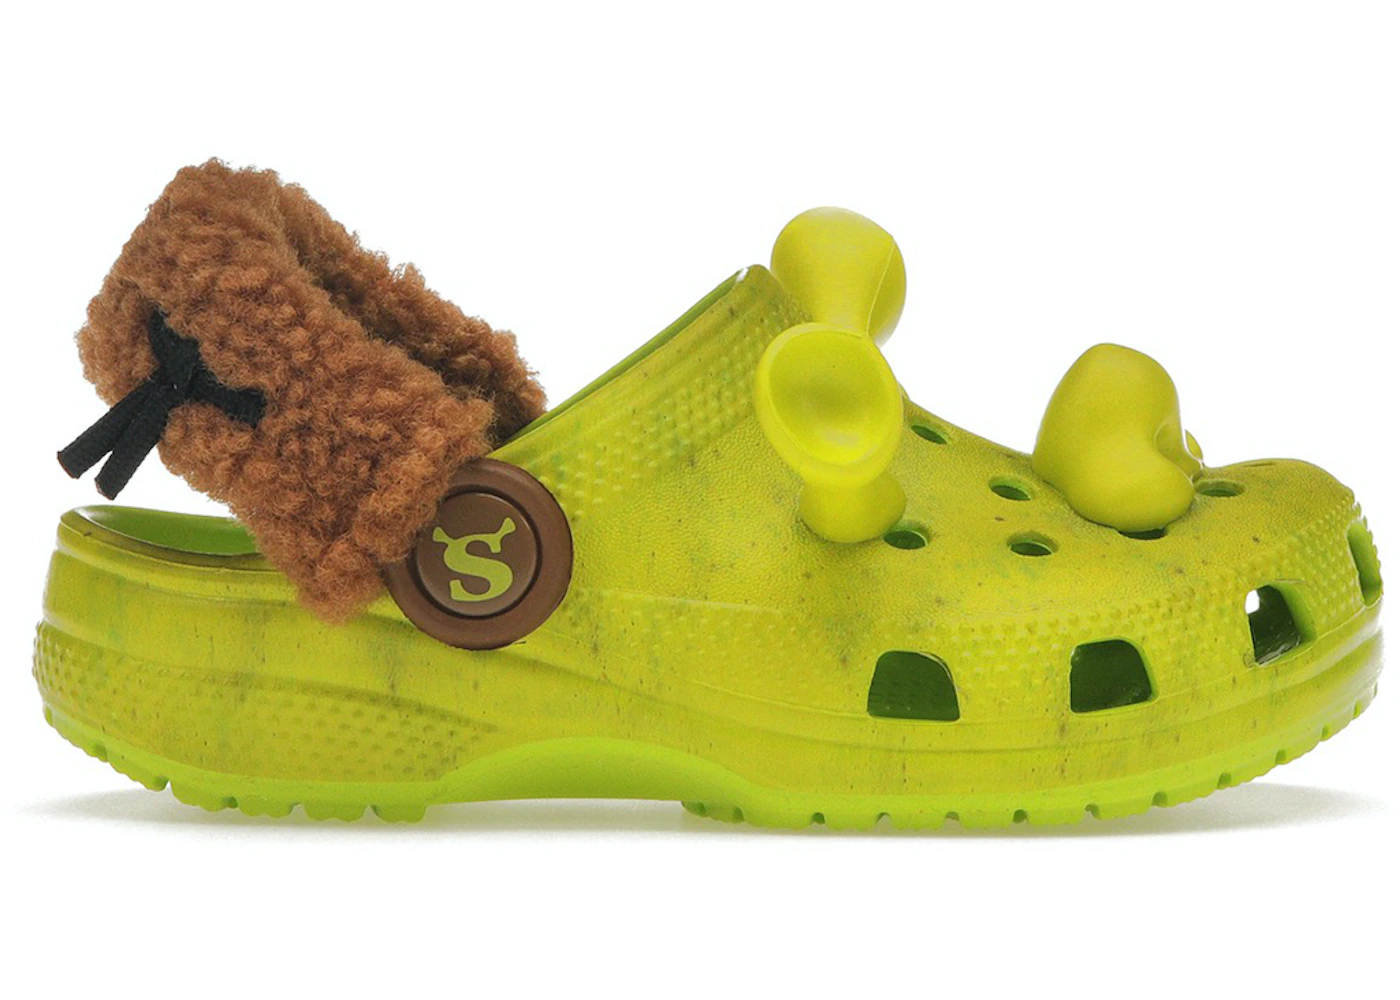 Crocs Introduce Shrek-themed Shoes! - 2EC